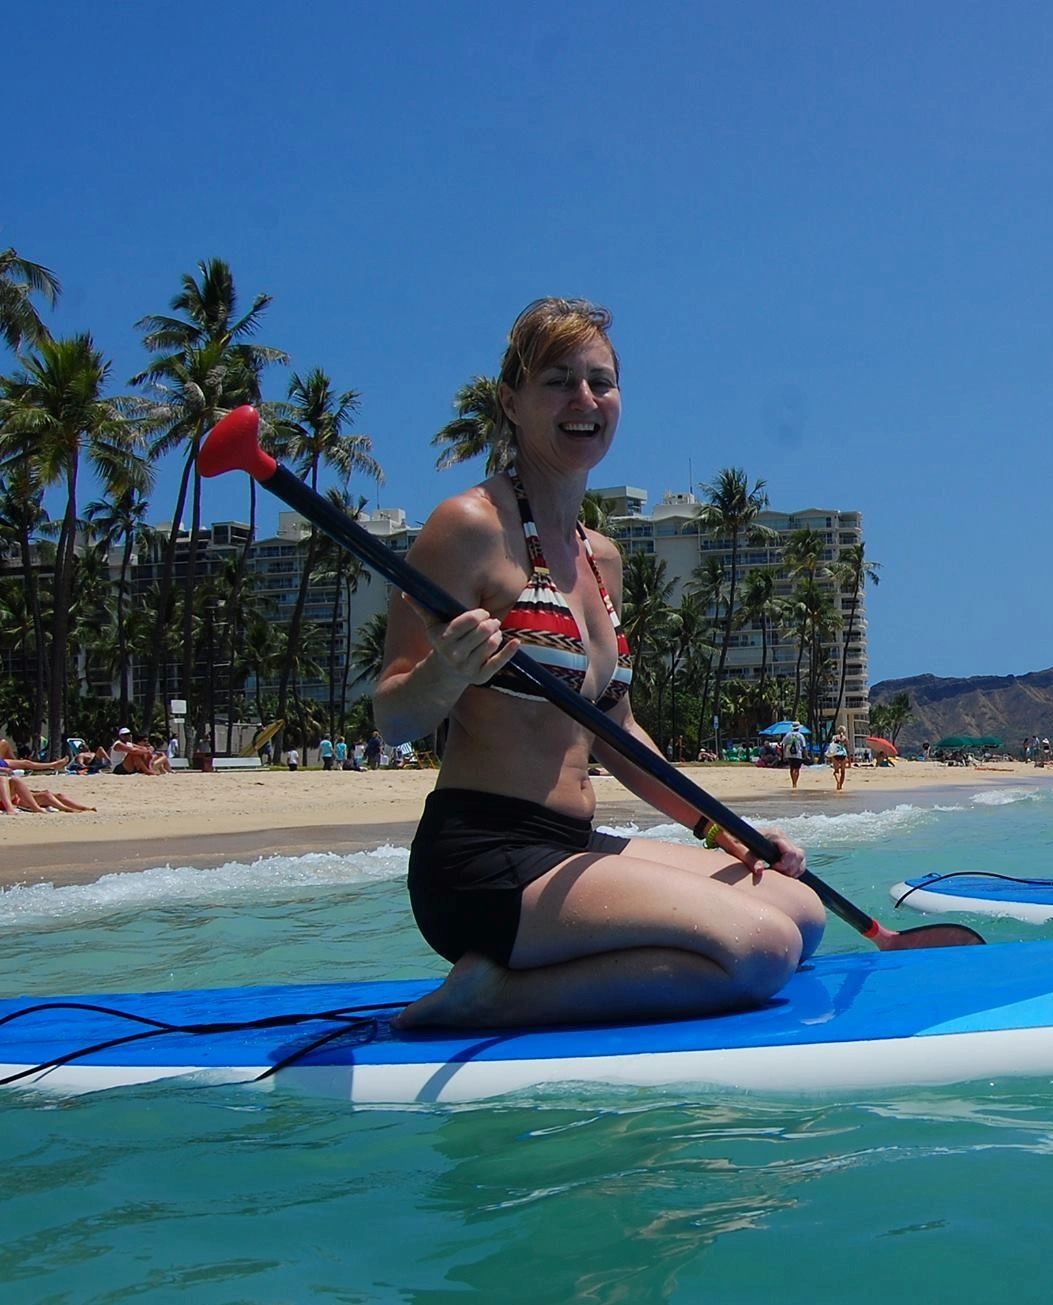 Paddle boarding in Oahu. 